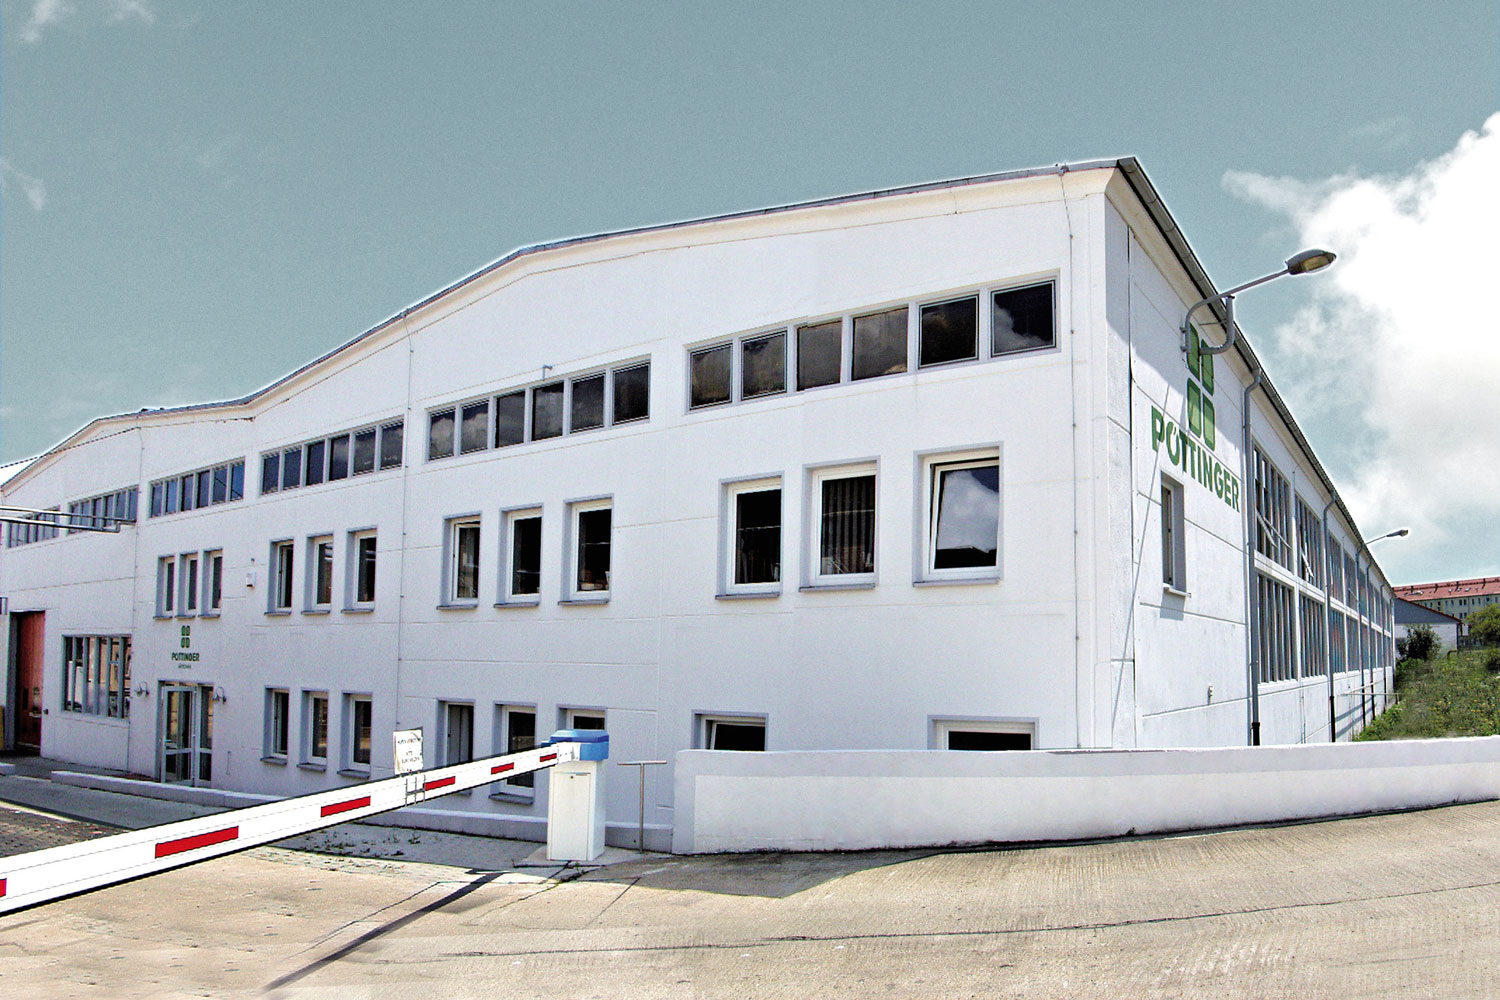 Посев дает всходы: новый завод PÖTTINGER в Бернбурге-ан-дер-Заале.